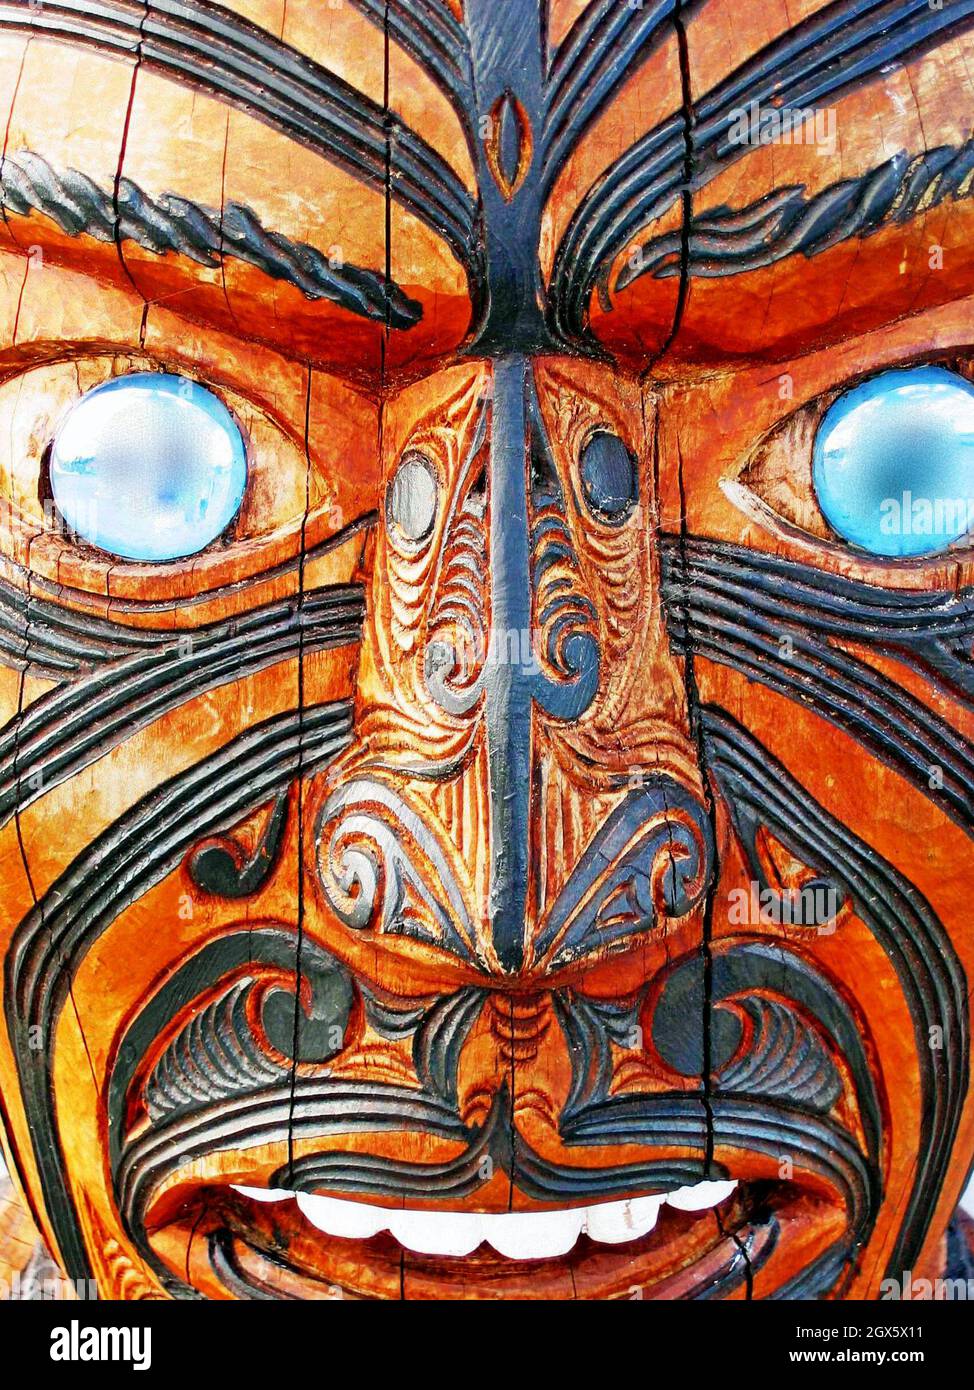 Un toi whakairo en bois sculpté d'un guerrier maori avec le visage entier Moko et les yeux d'ormeau. Banque D'Images